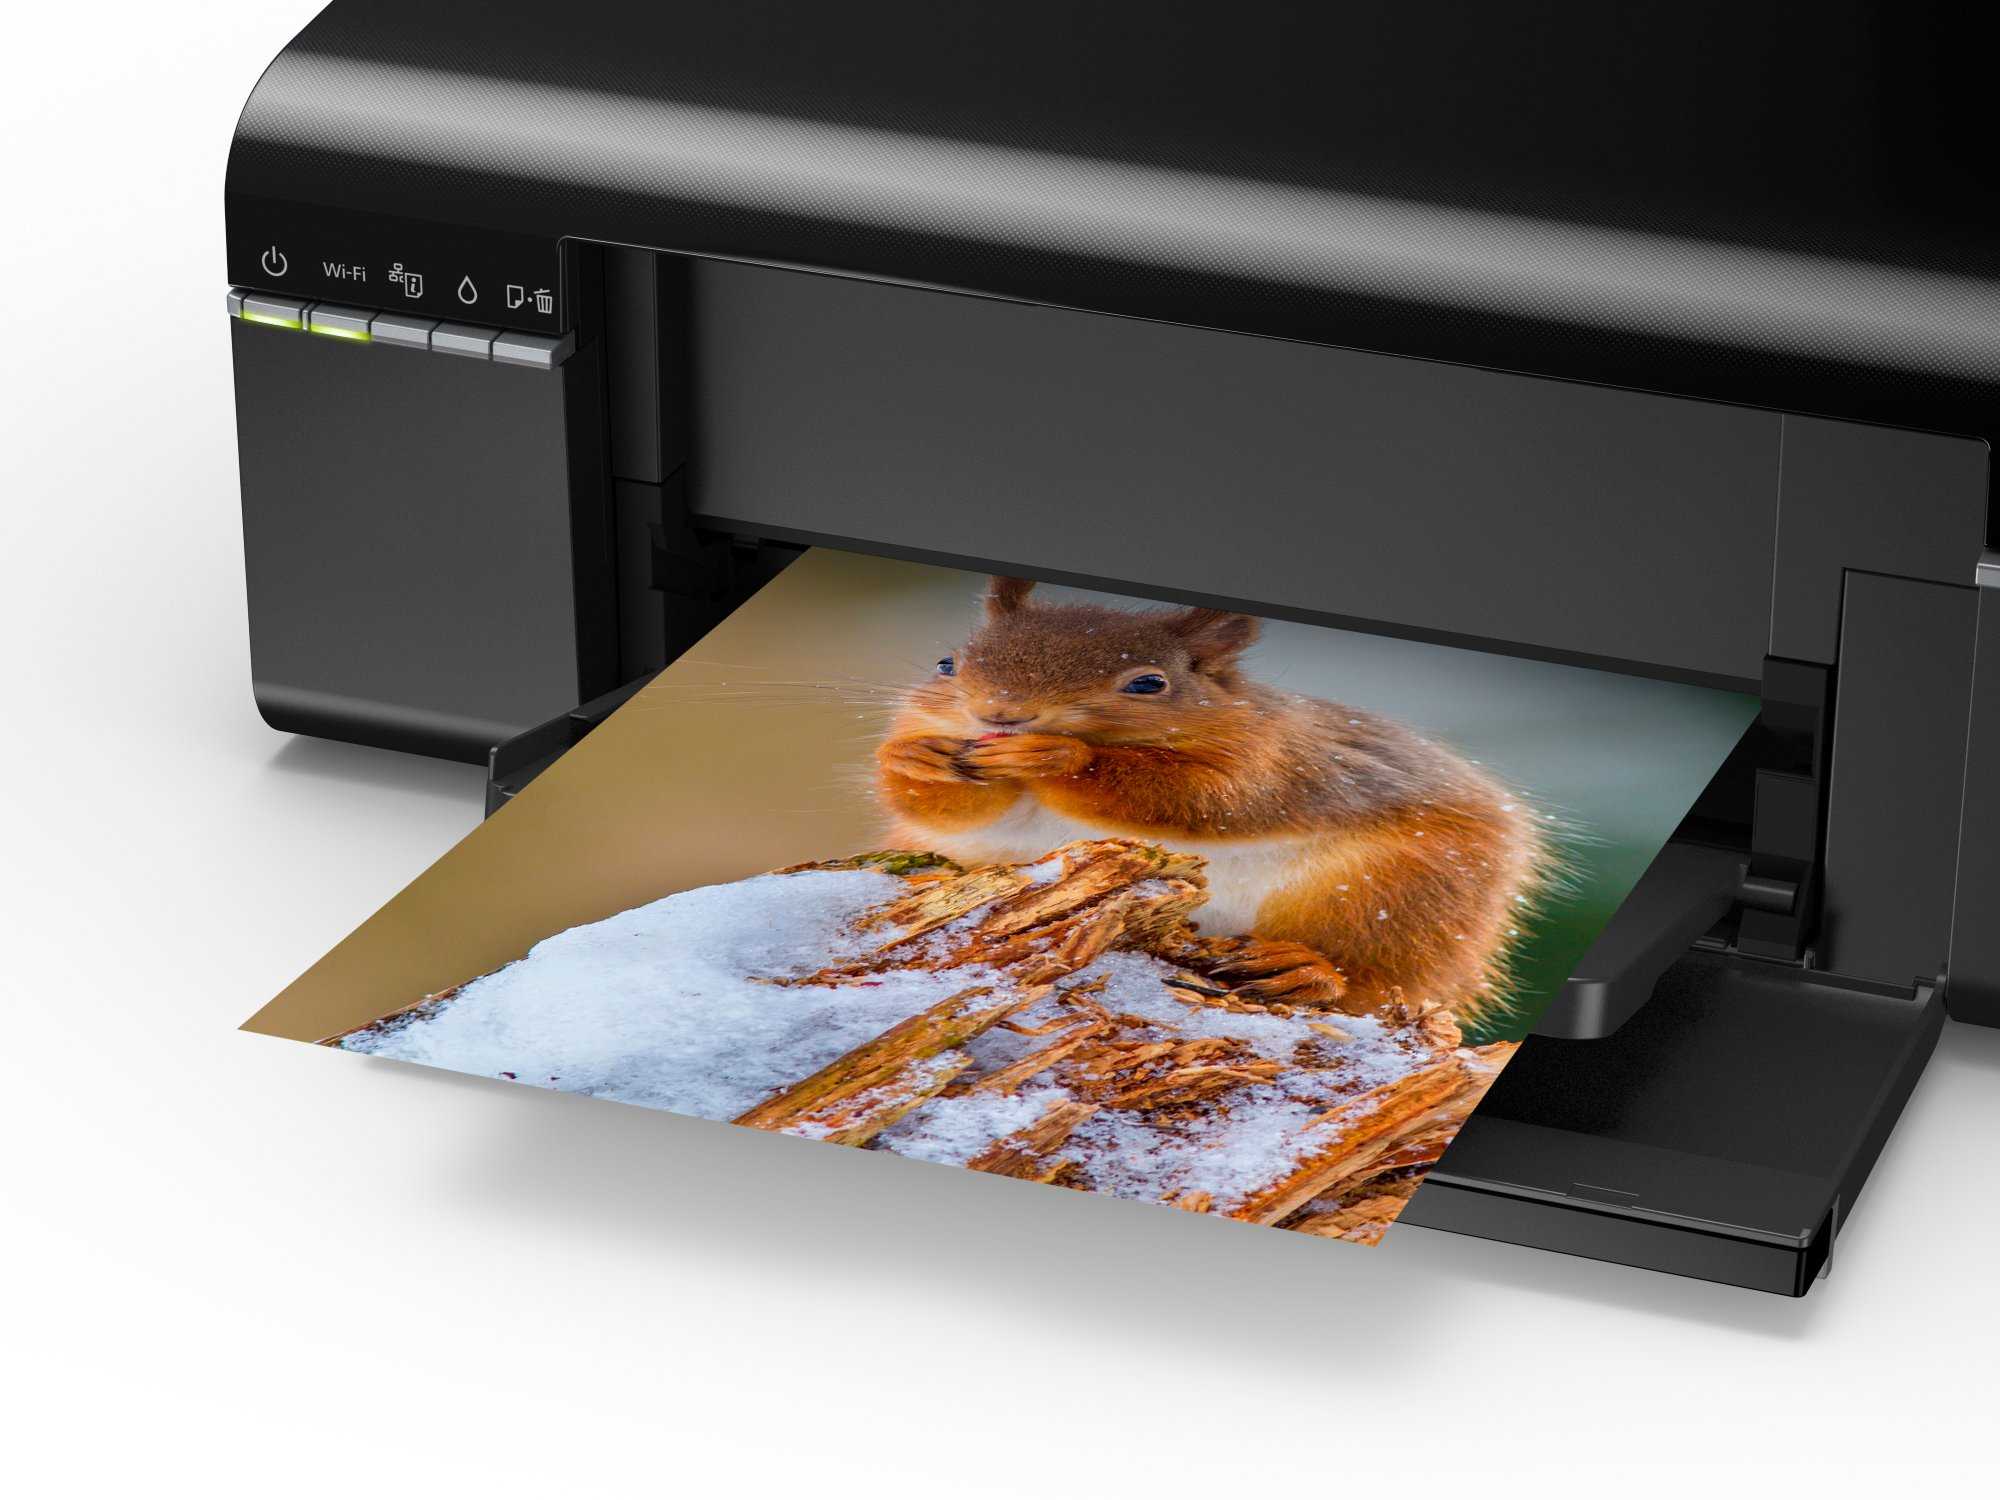 Лучшие принтеры для печати фотографий в 2021 году